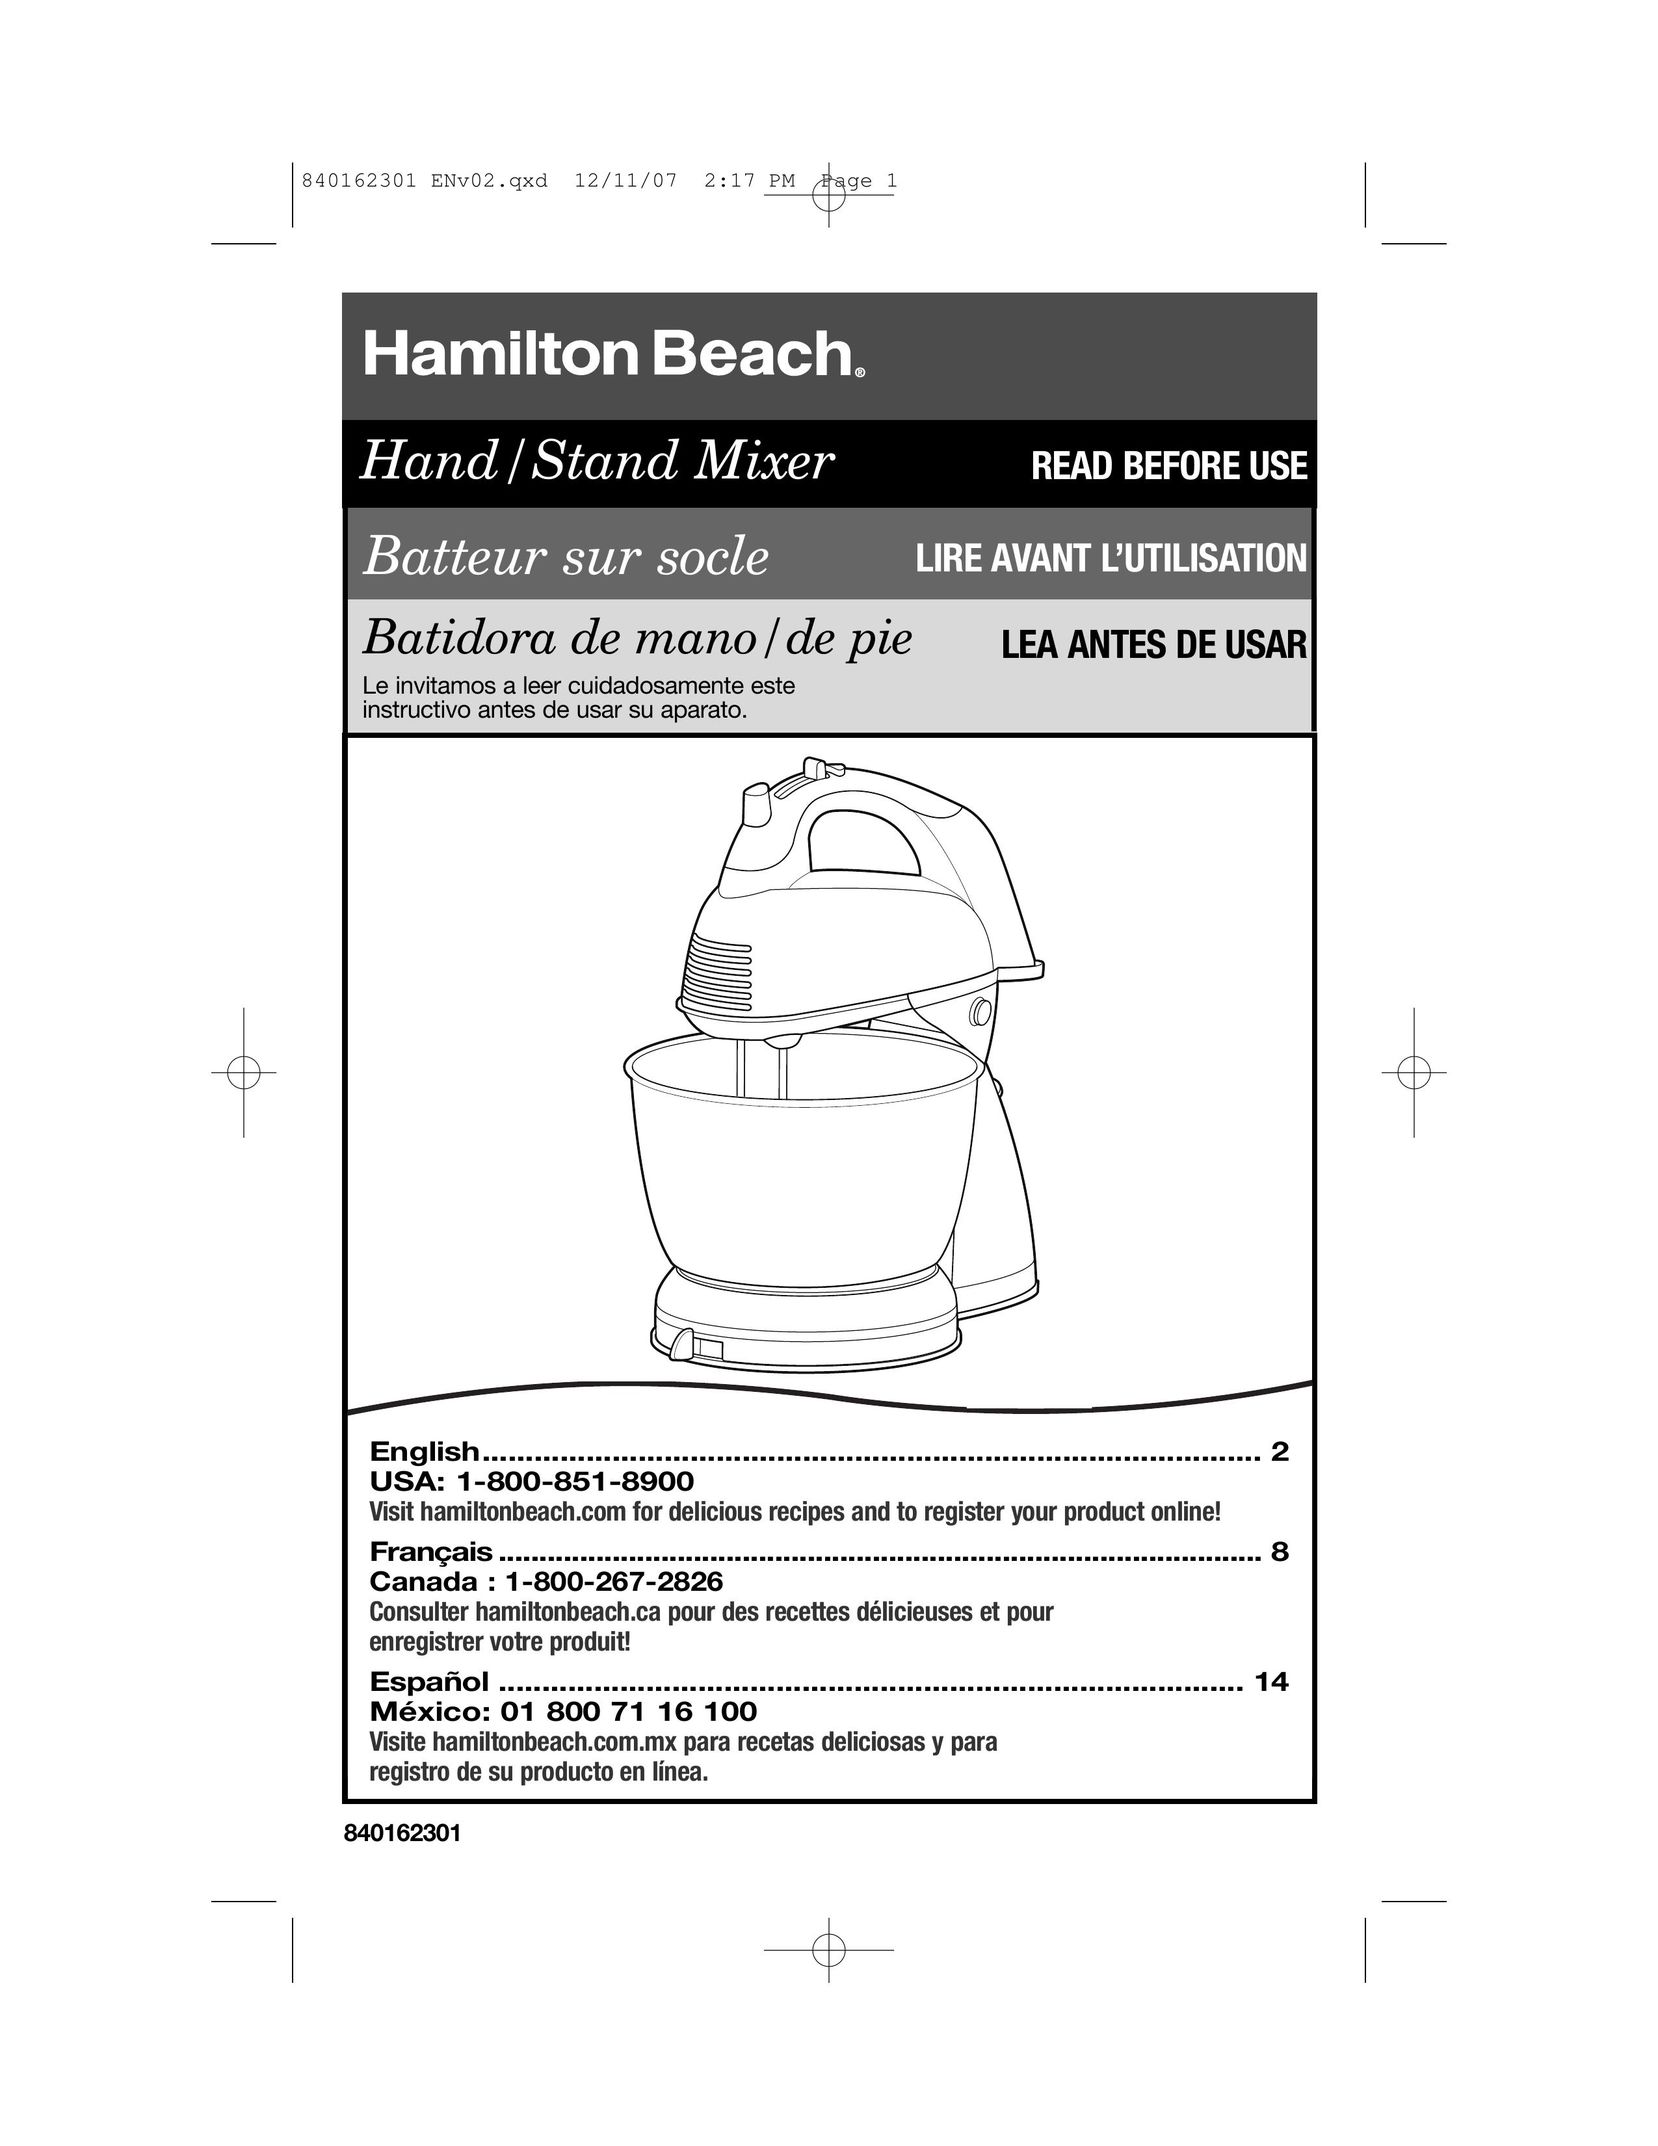 Hamilton Beach Hand/Stand Mixer Mixer User Manual